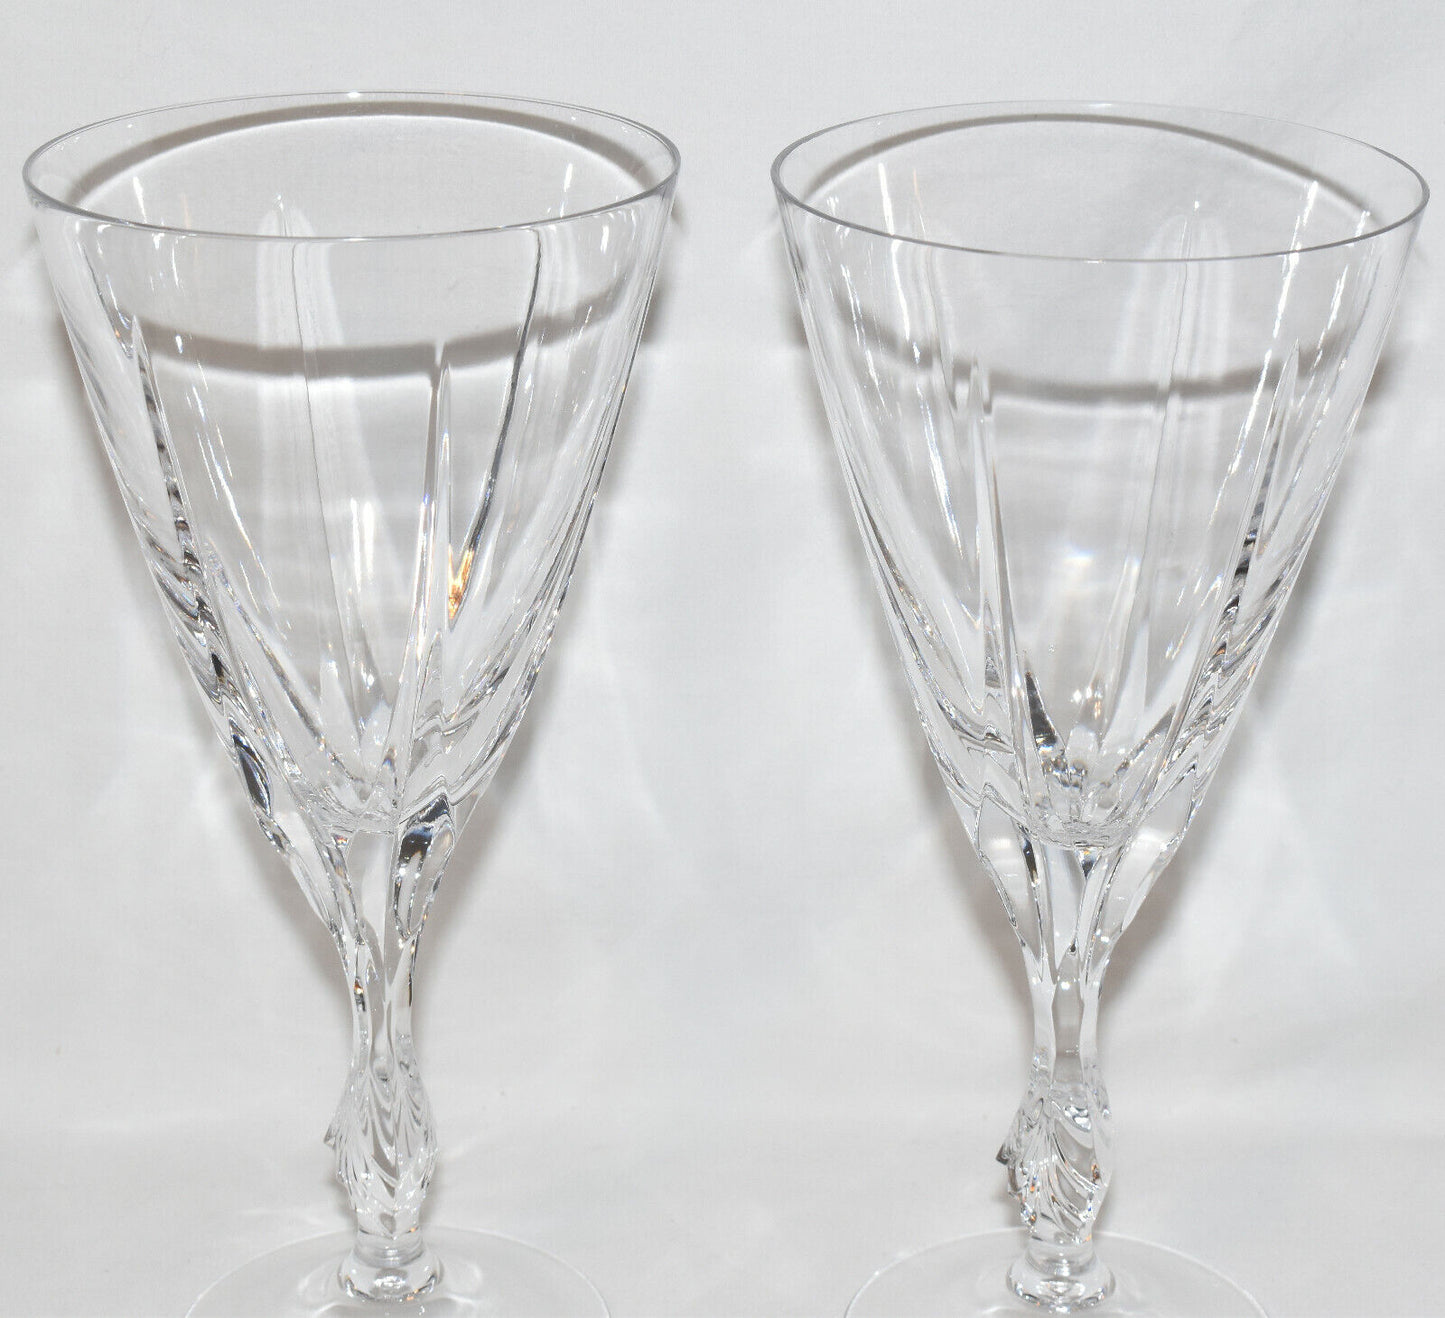 Vintage Pair Gorham Large Crystal Goblets Drinking Glasses Wine Goblets Germany